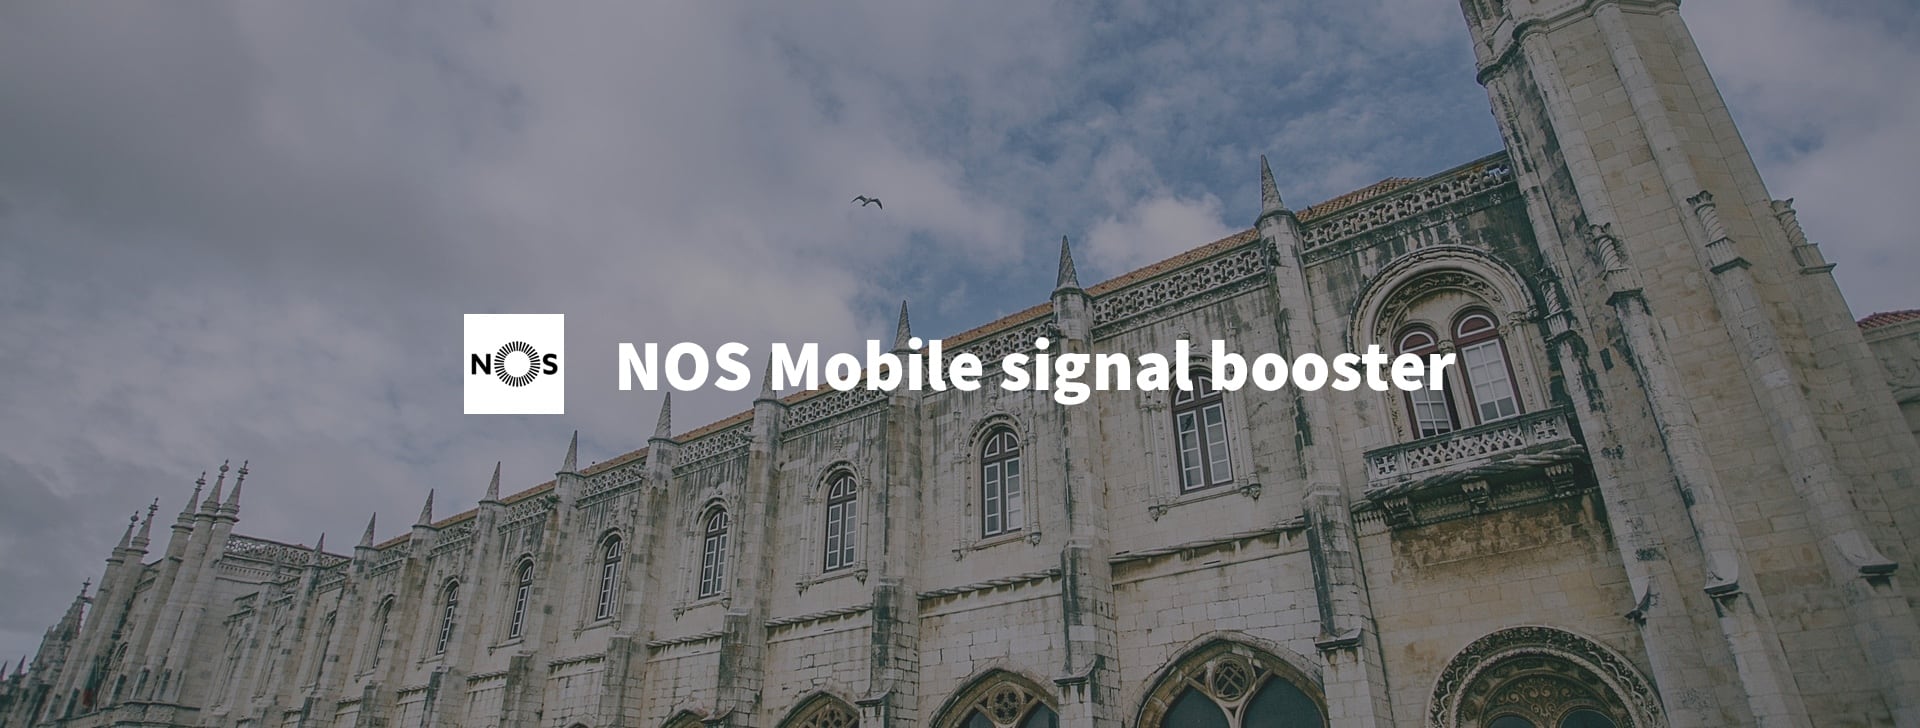 NOS mobile signal